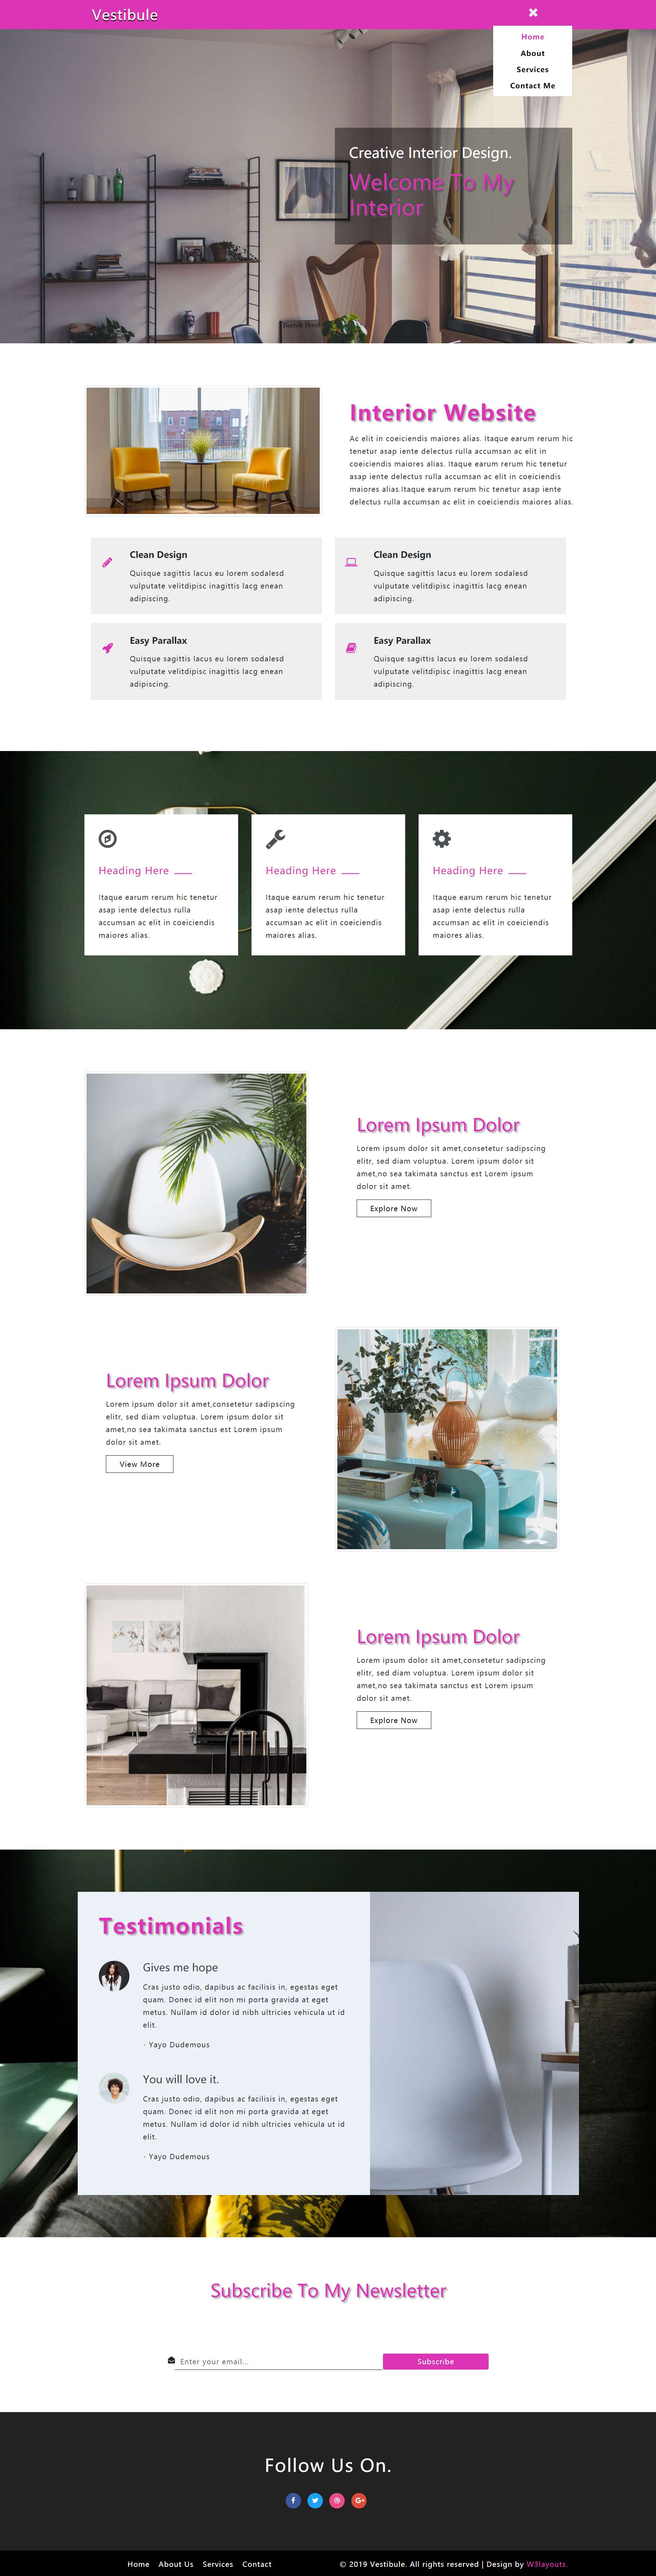 紫色宽屏风格响应式精致室内设计网页模板